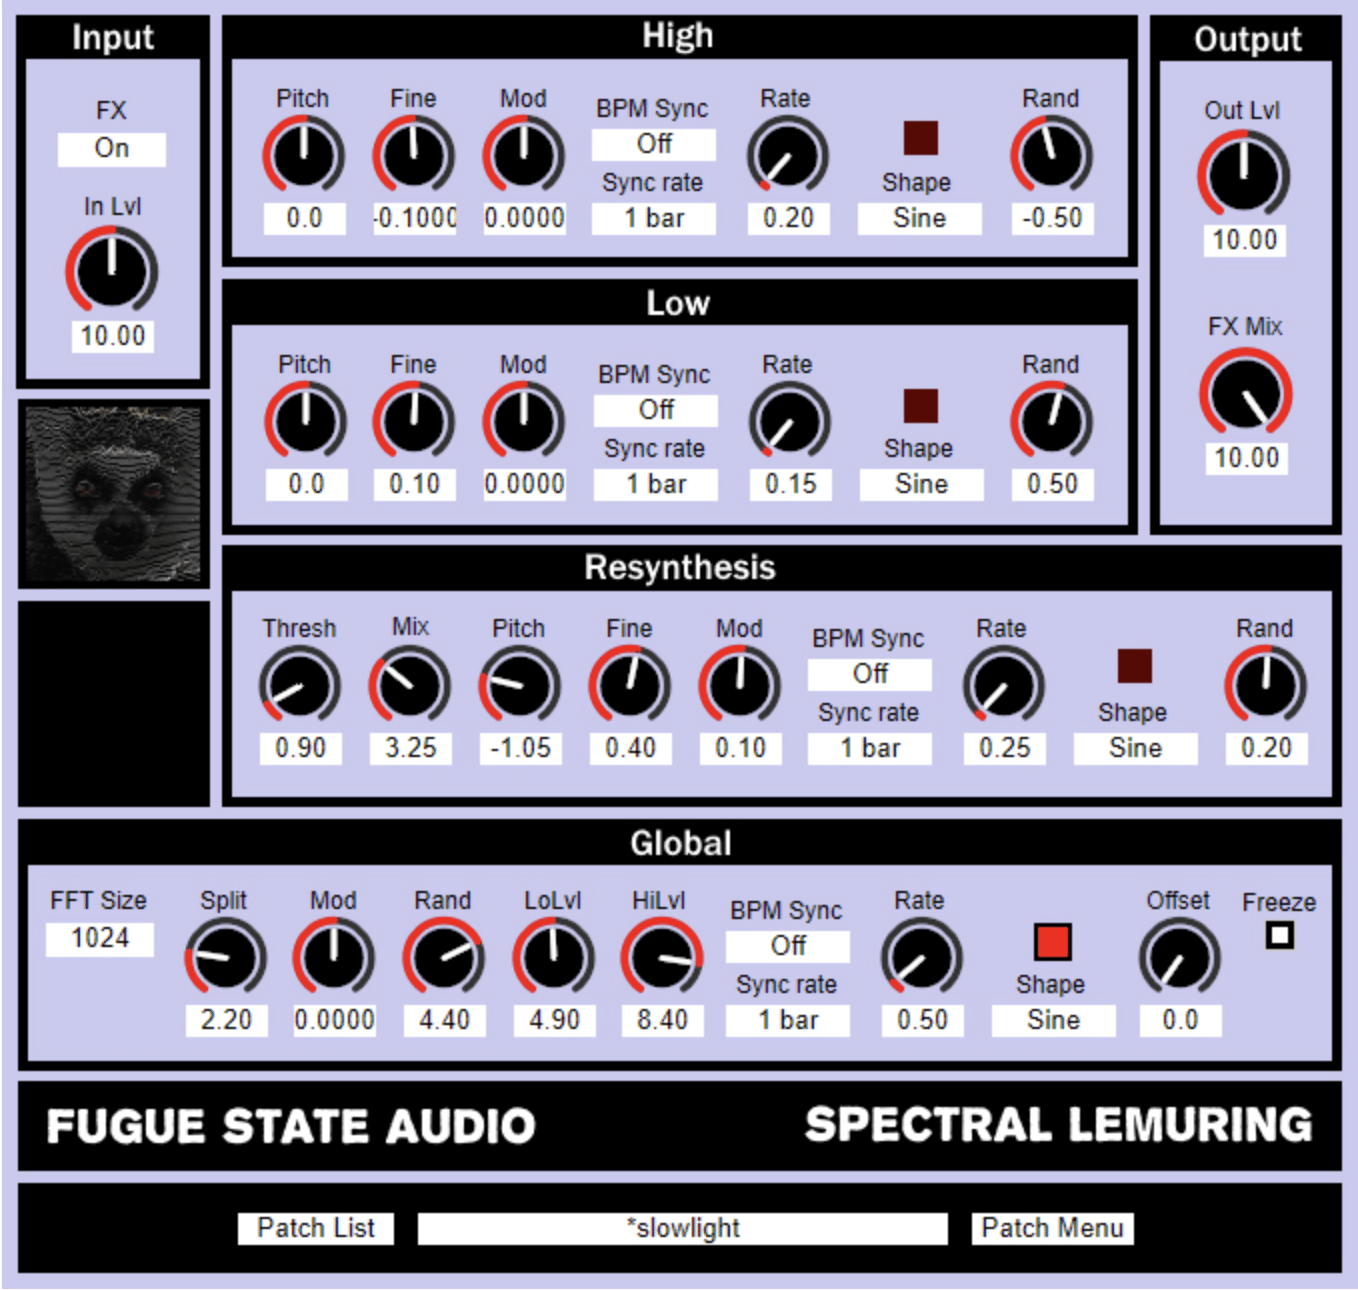 Spectrum Lemuring Fugue State Audio - Unison